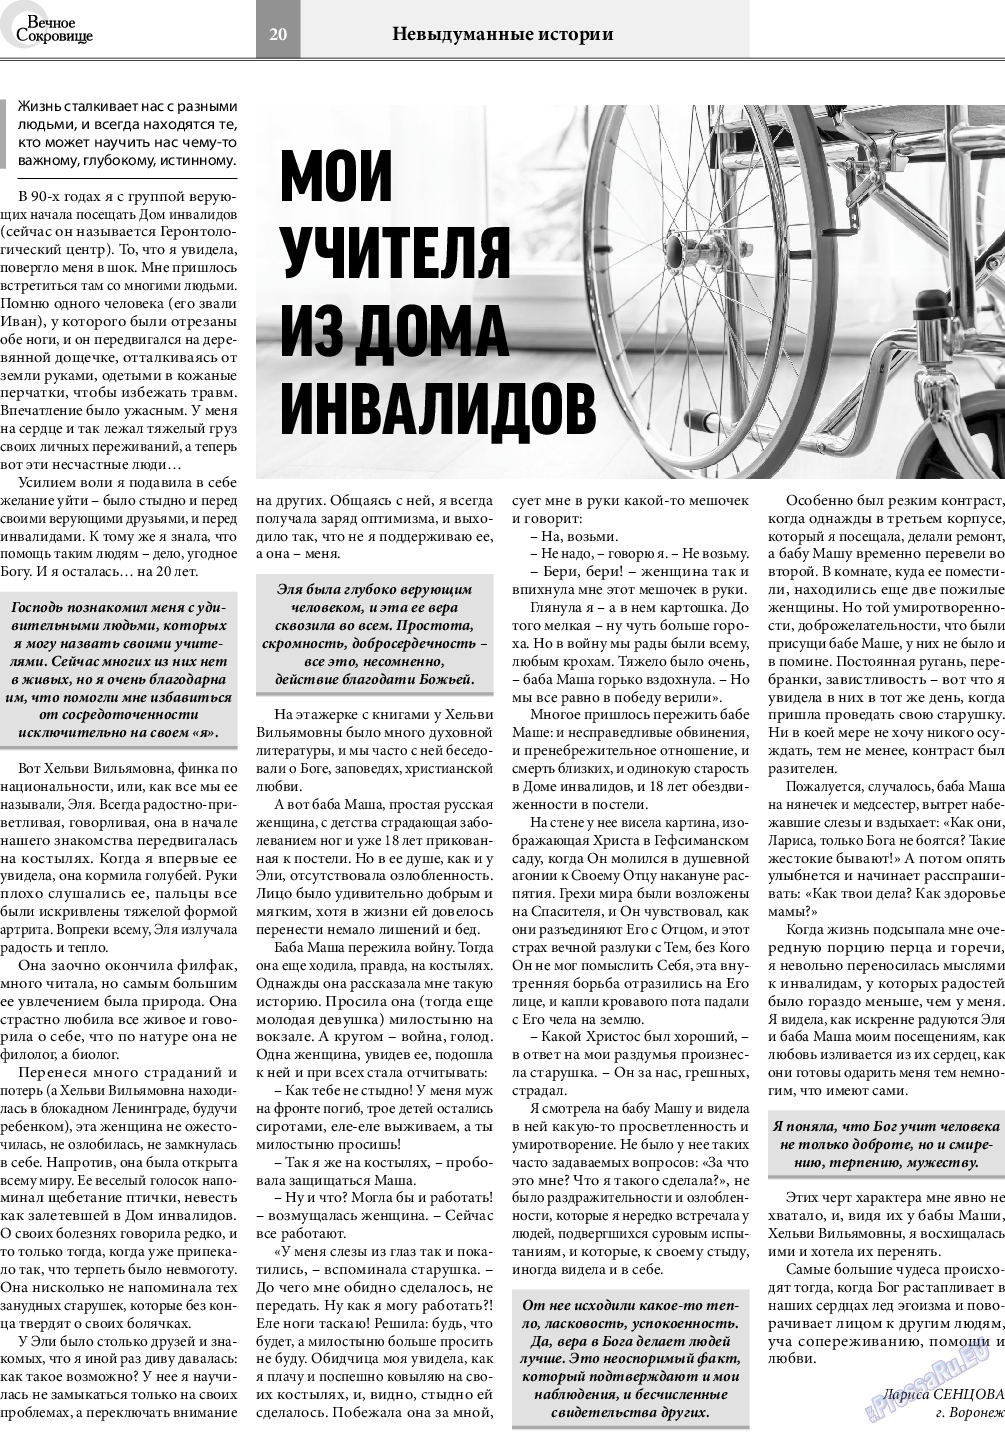 Вечное сокровище, газета. 2020 №5 стр.20